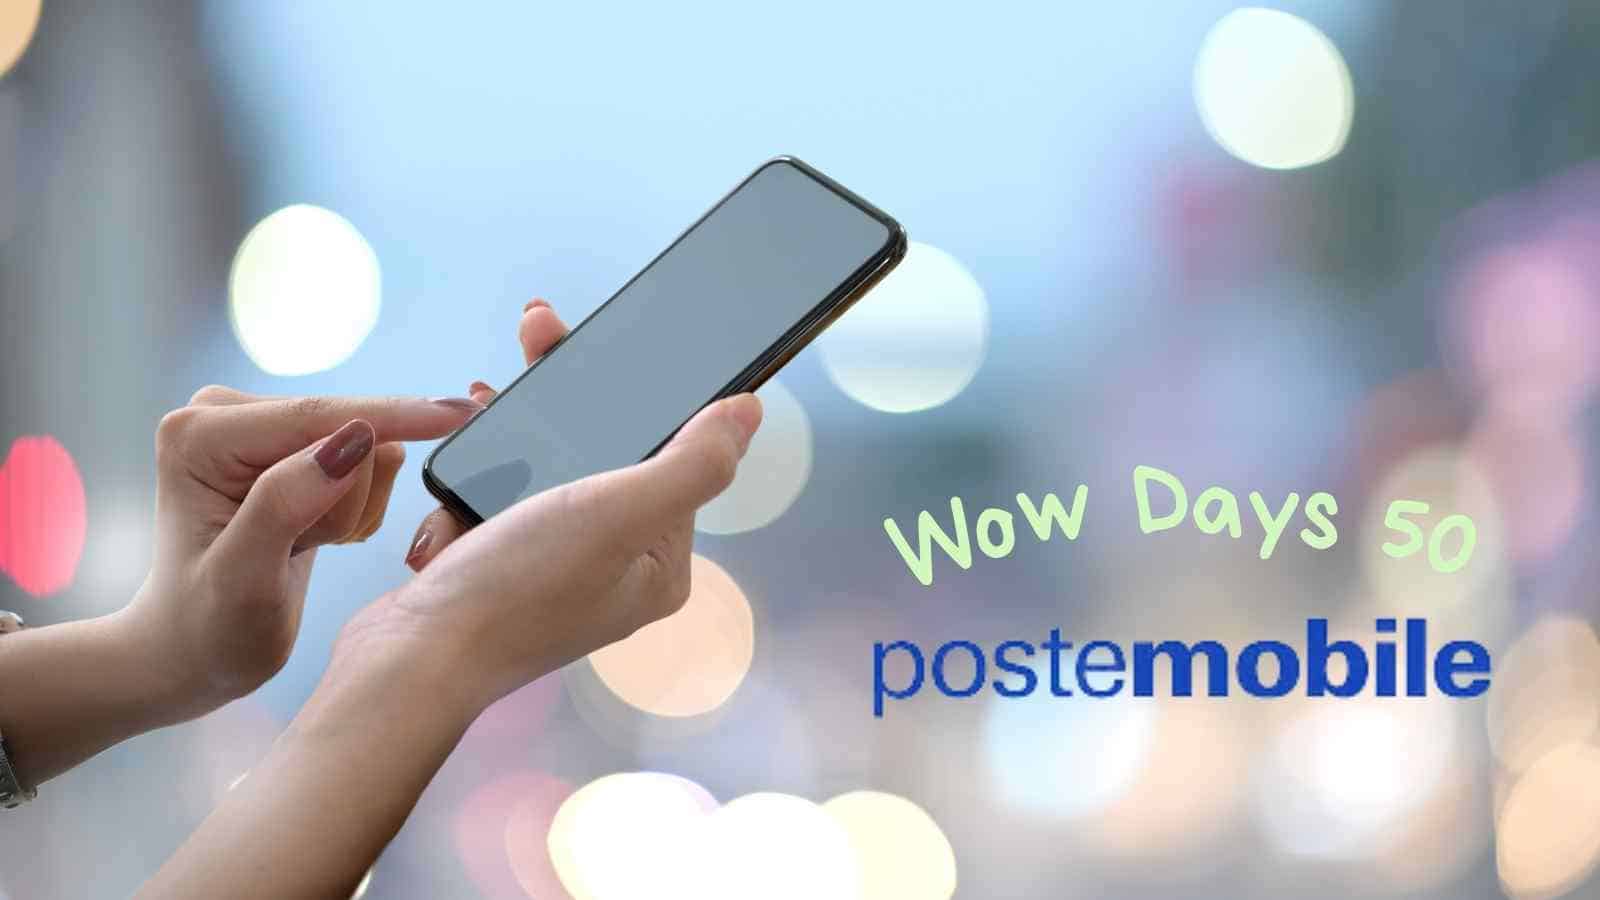 Wow Days 50, la super offerta di Postemobile, torna disponibile per chi cerca una tariffa sensazionale!